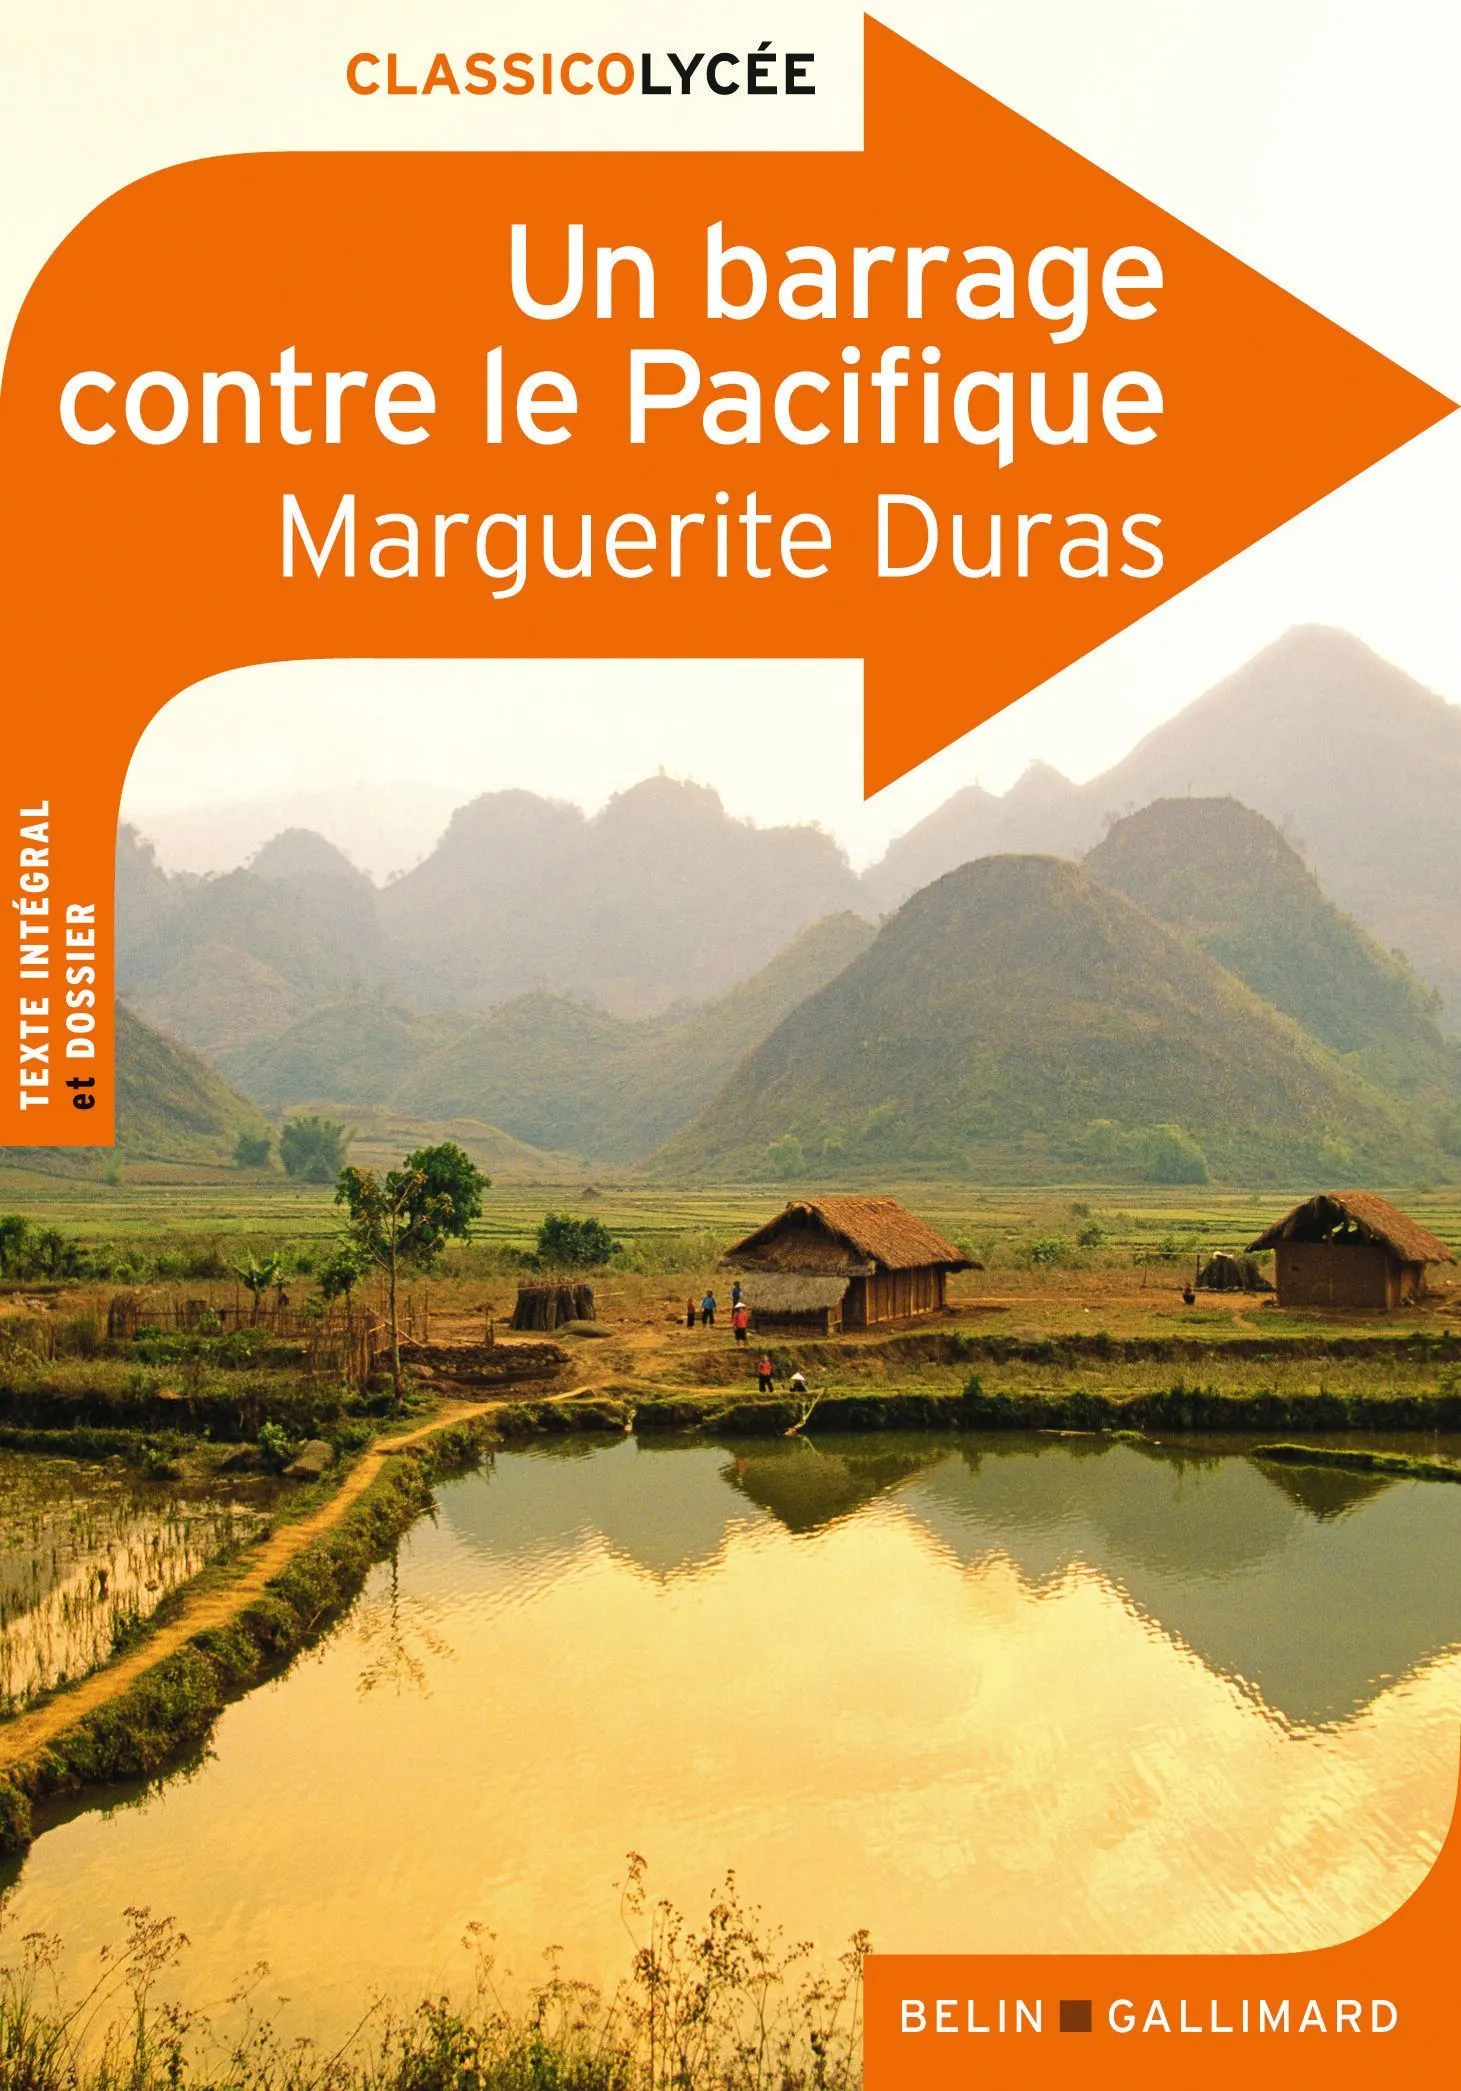 Un barrage contre le Pacifique Marguerite Duras